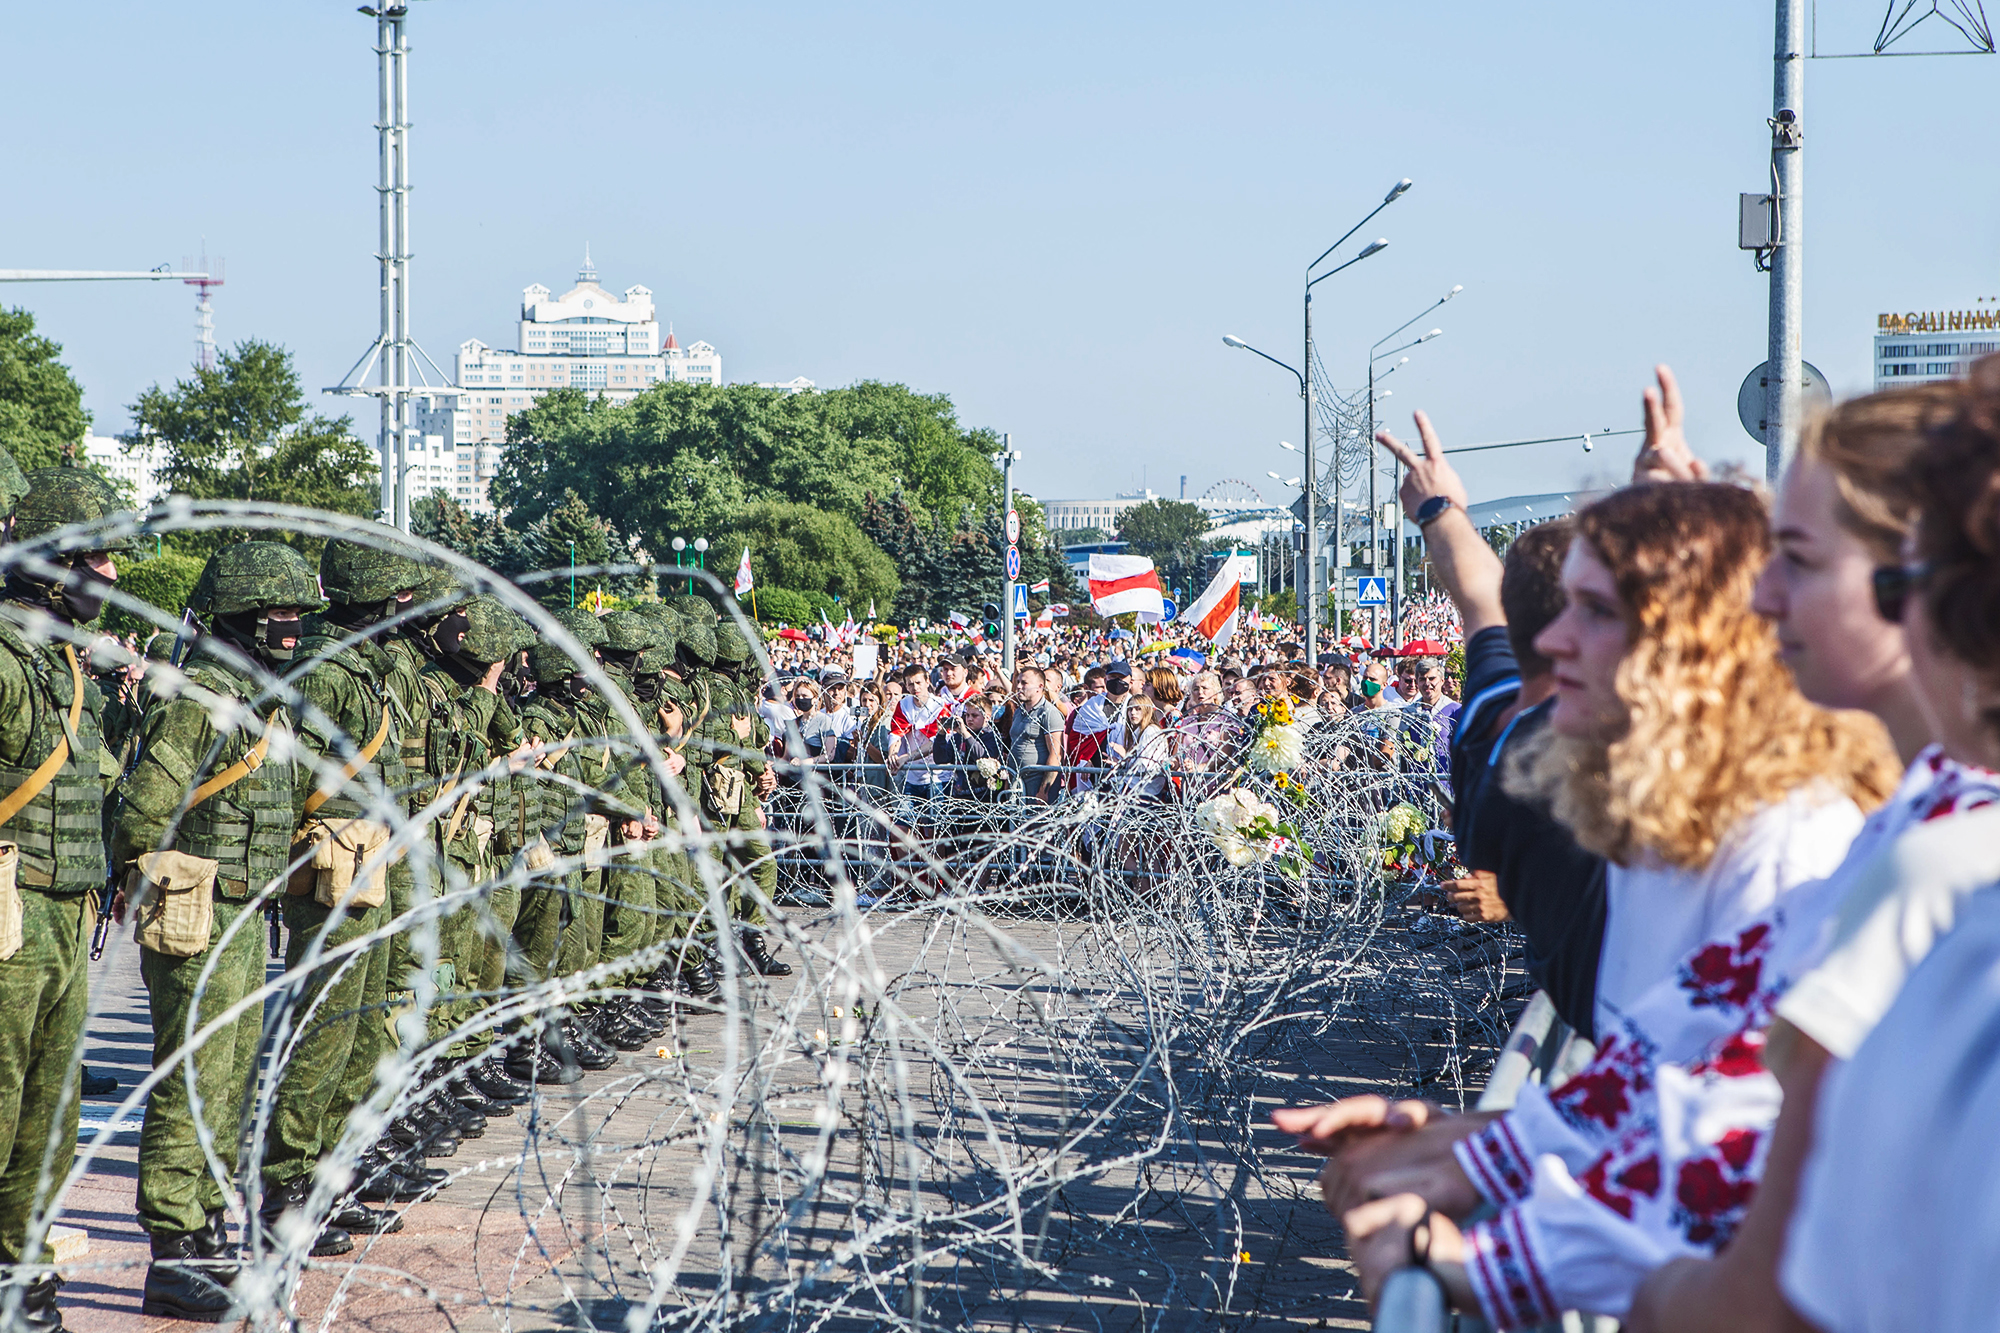 Dopo la manifestazione davanti al monumento "Stela". Minsk, agosto 2020.